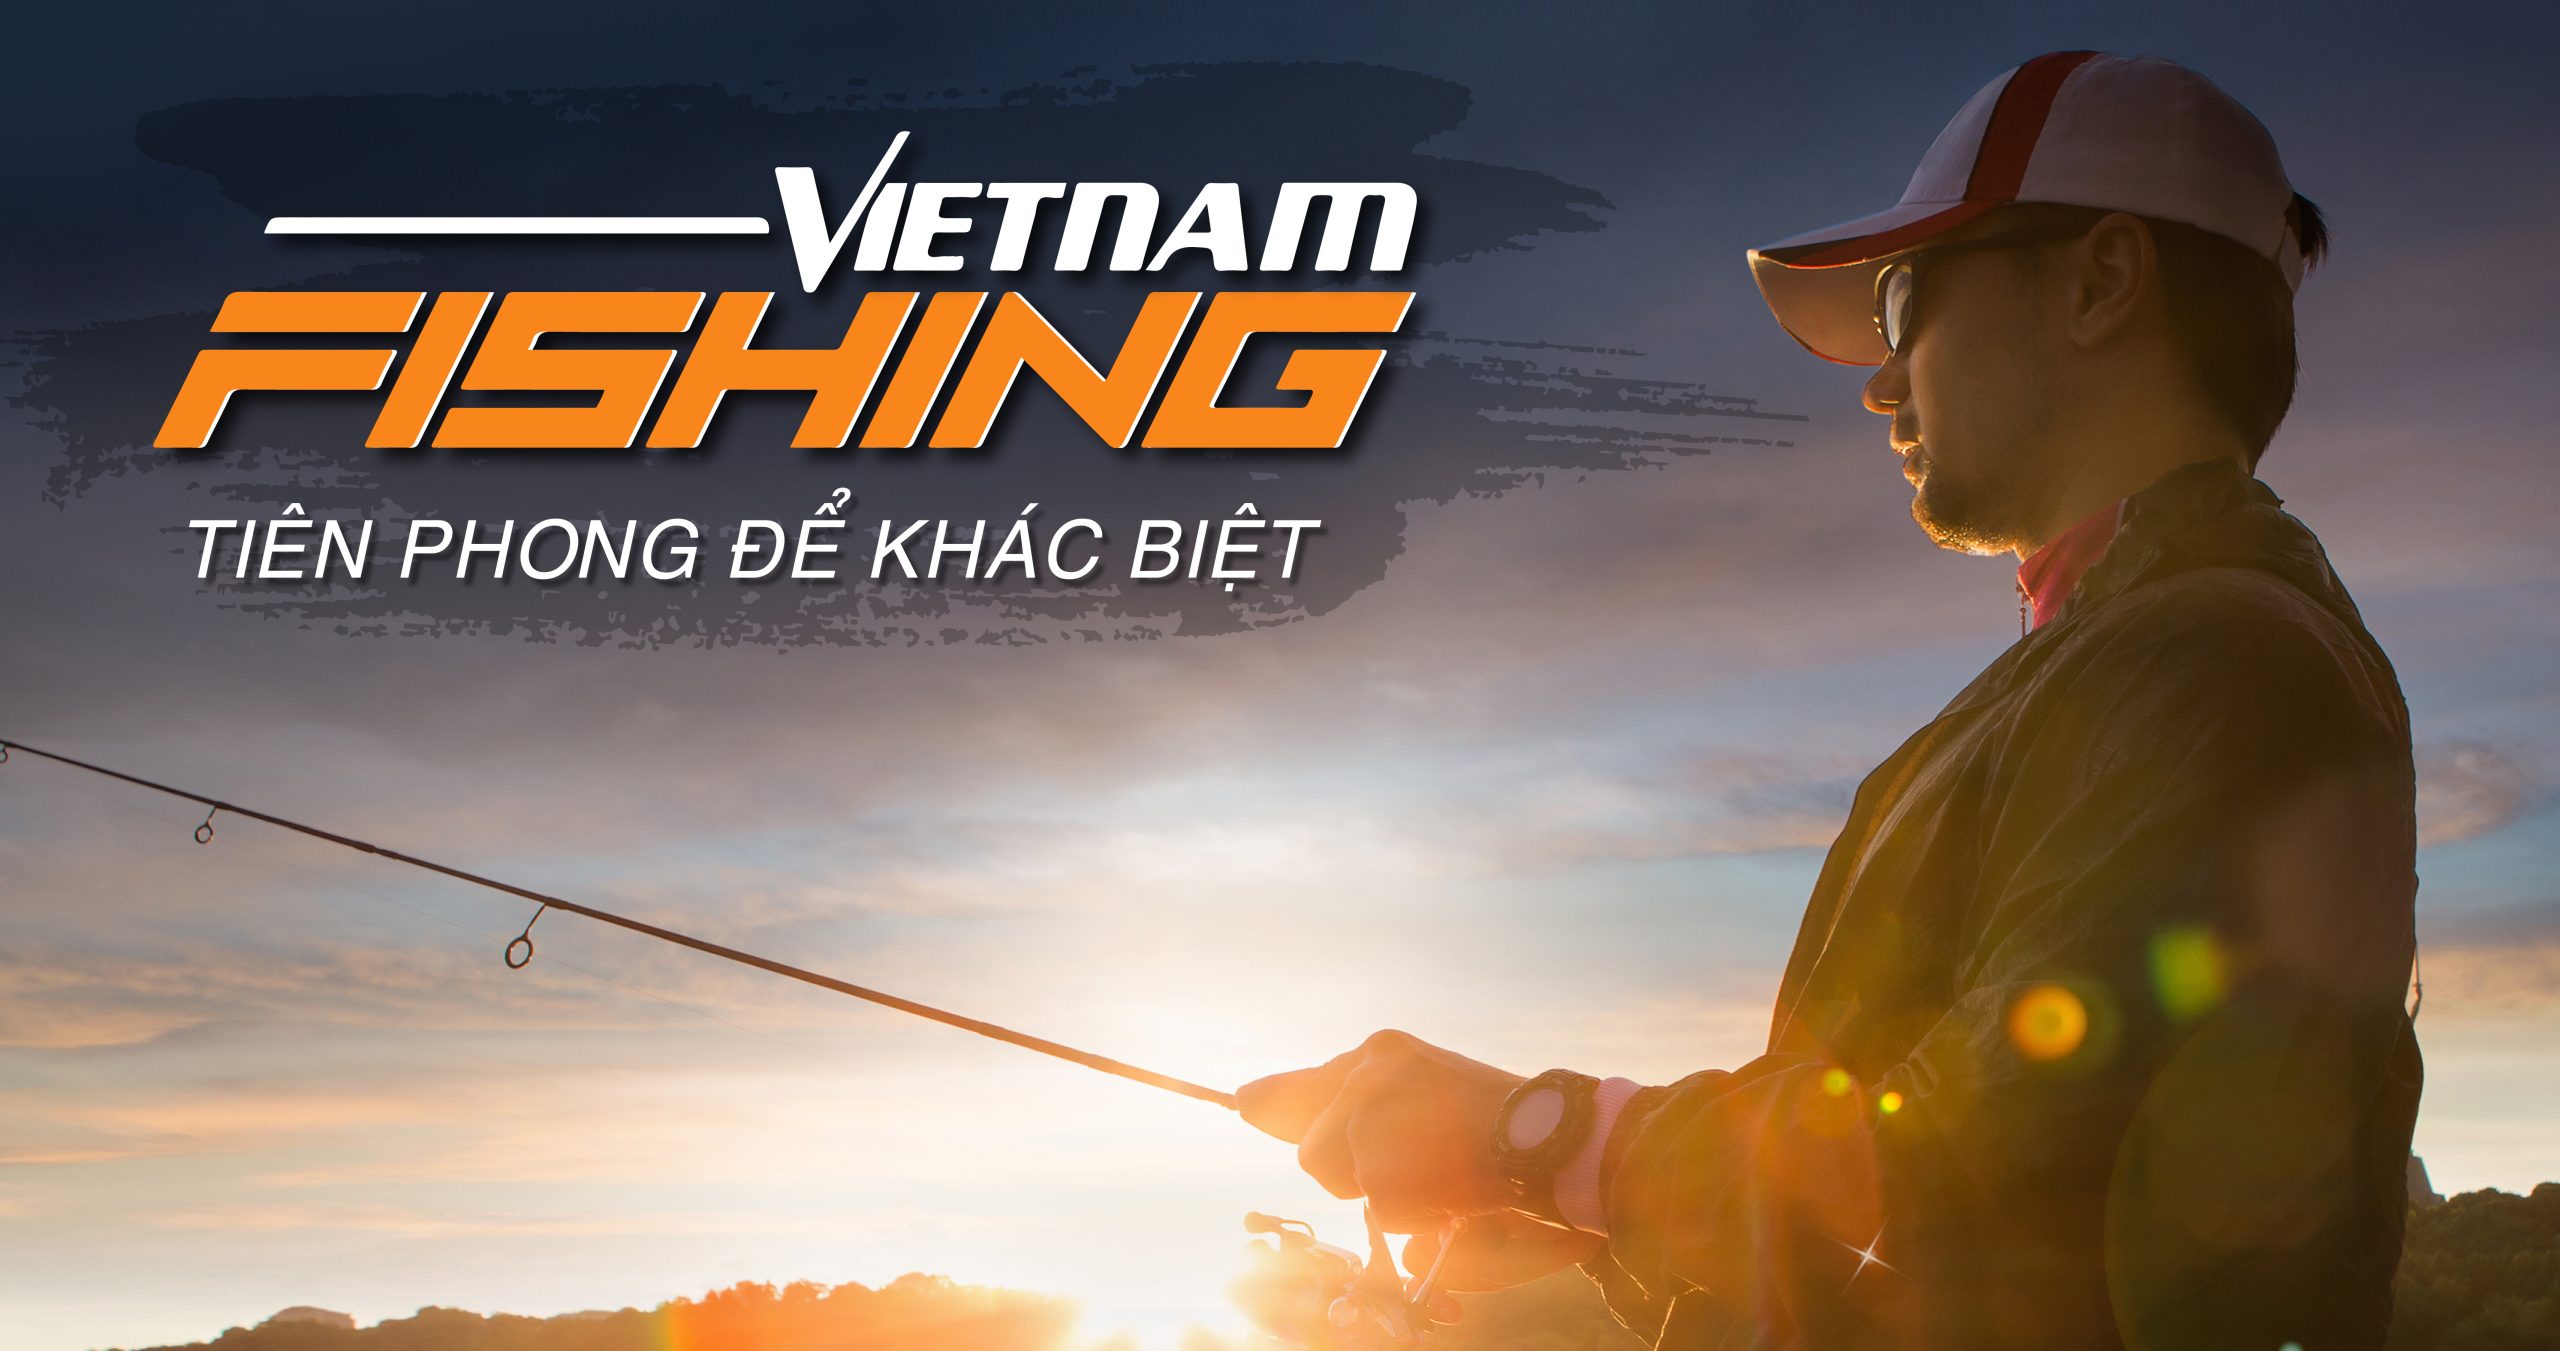 Vietnam Fishing - Trang bán đồ câu cá trực tuyến